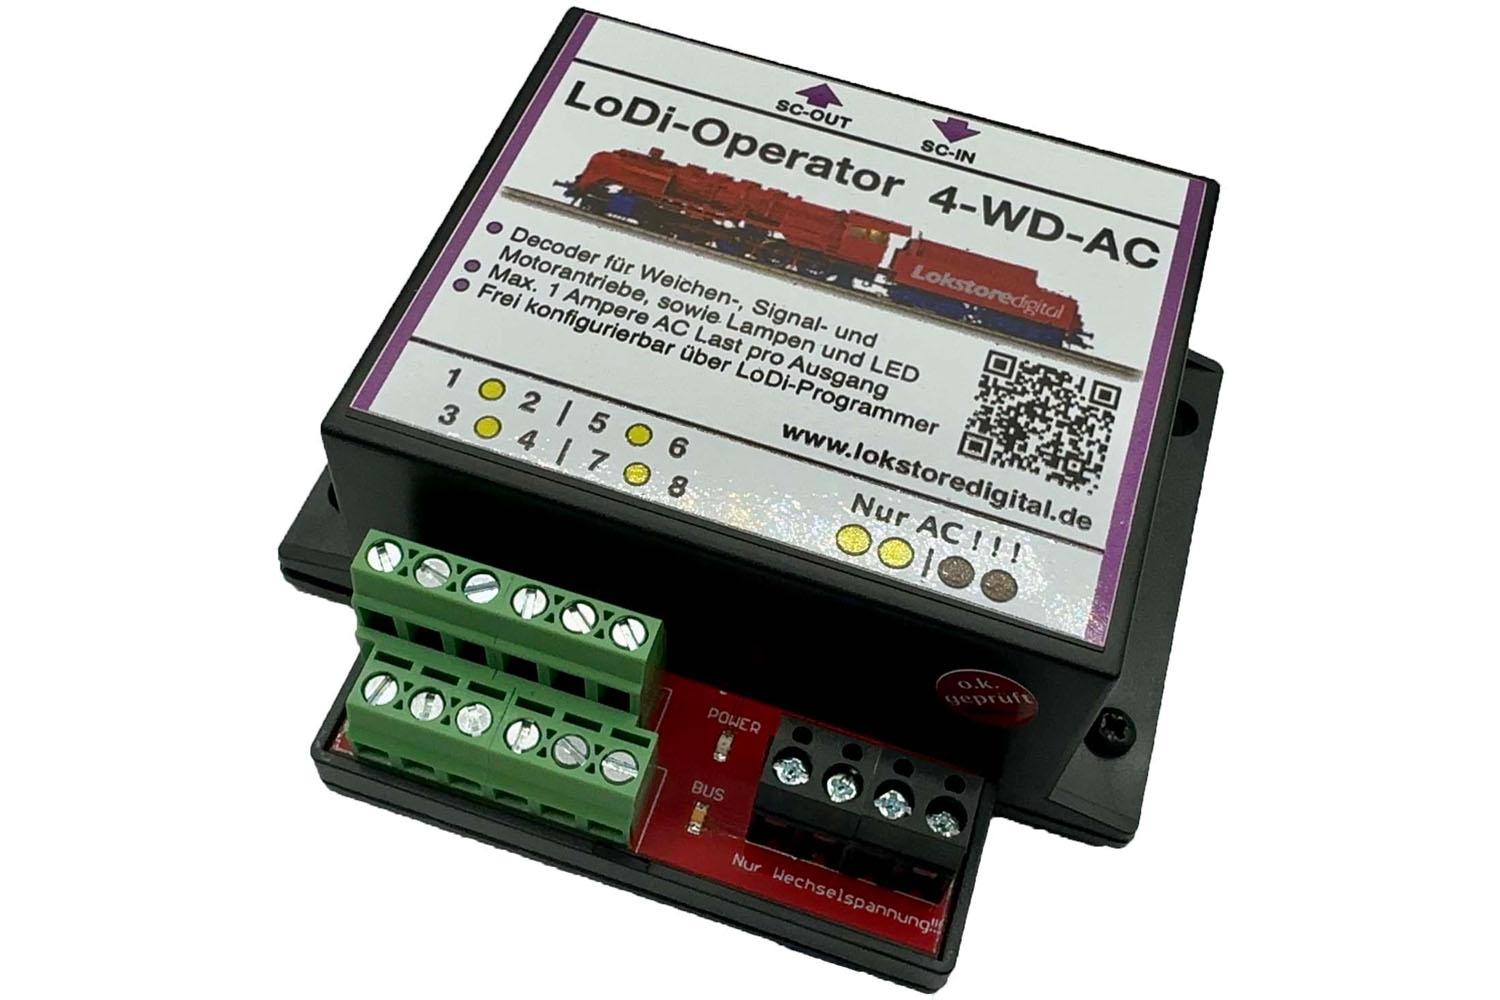 008 LoDi-Operator 4-WD-AC